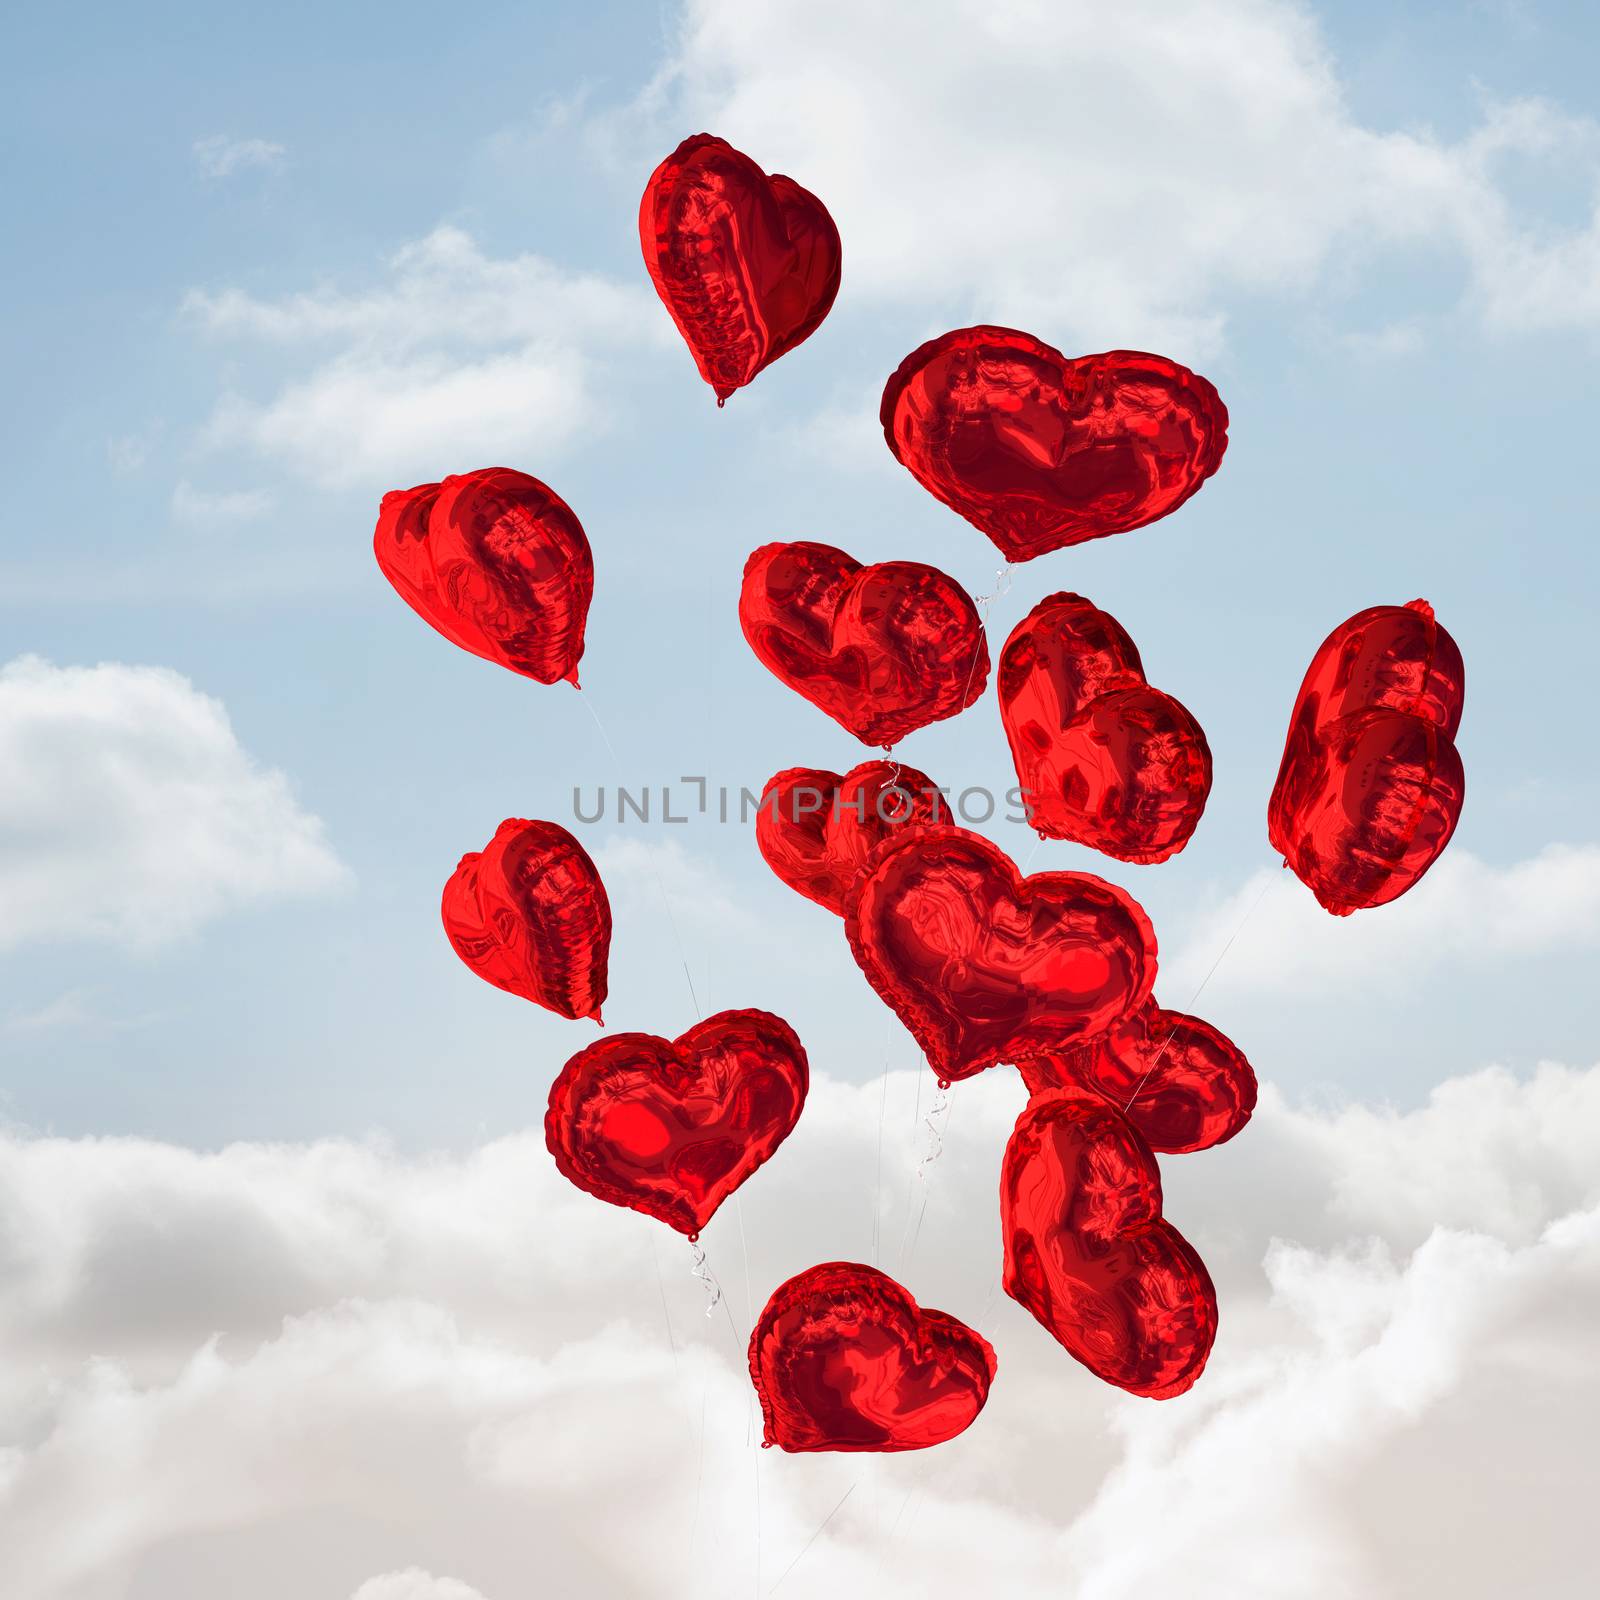 Heart balloons against cloudy sky